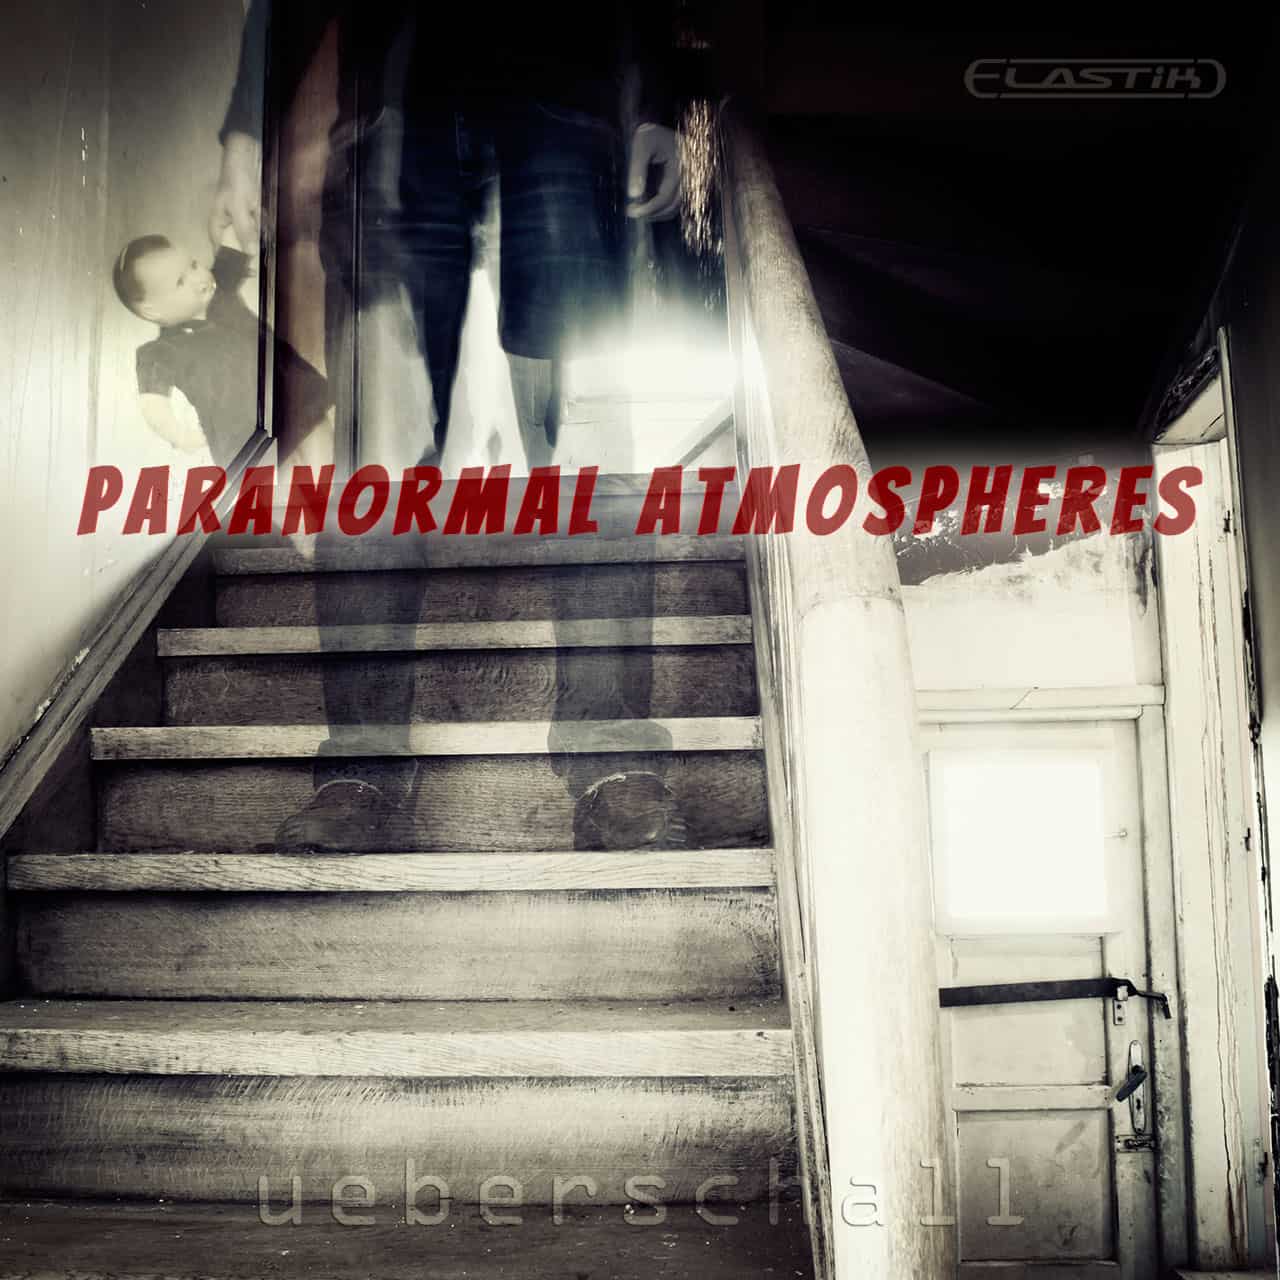 Ueberschall – New Paranormal Atmospheres Soundbank Released